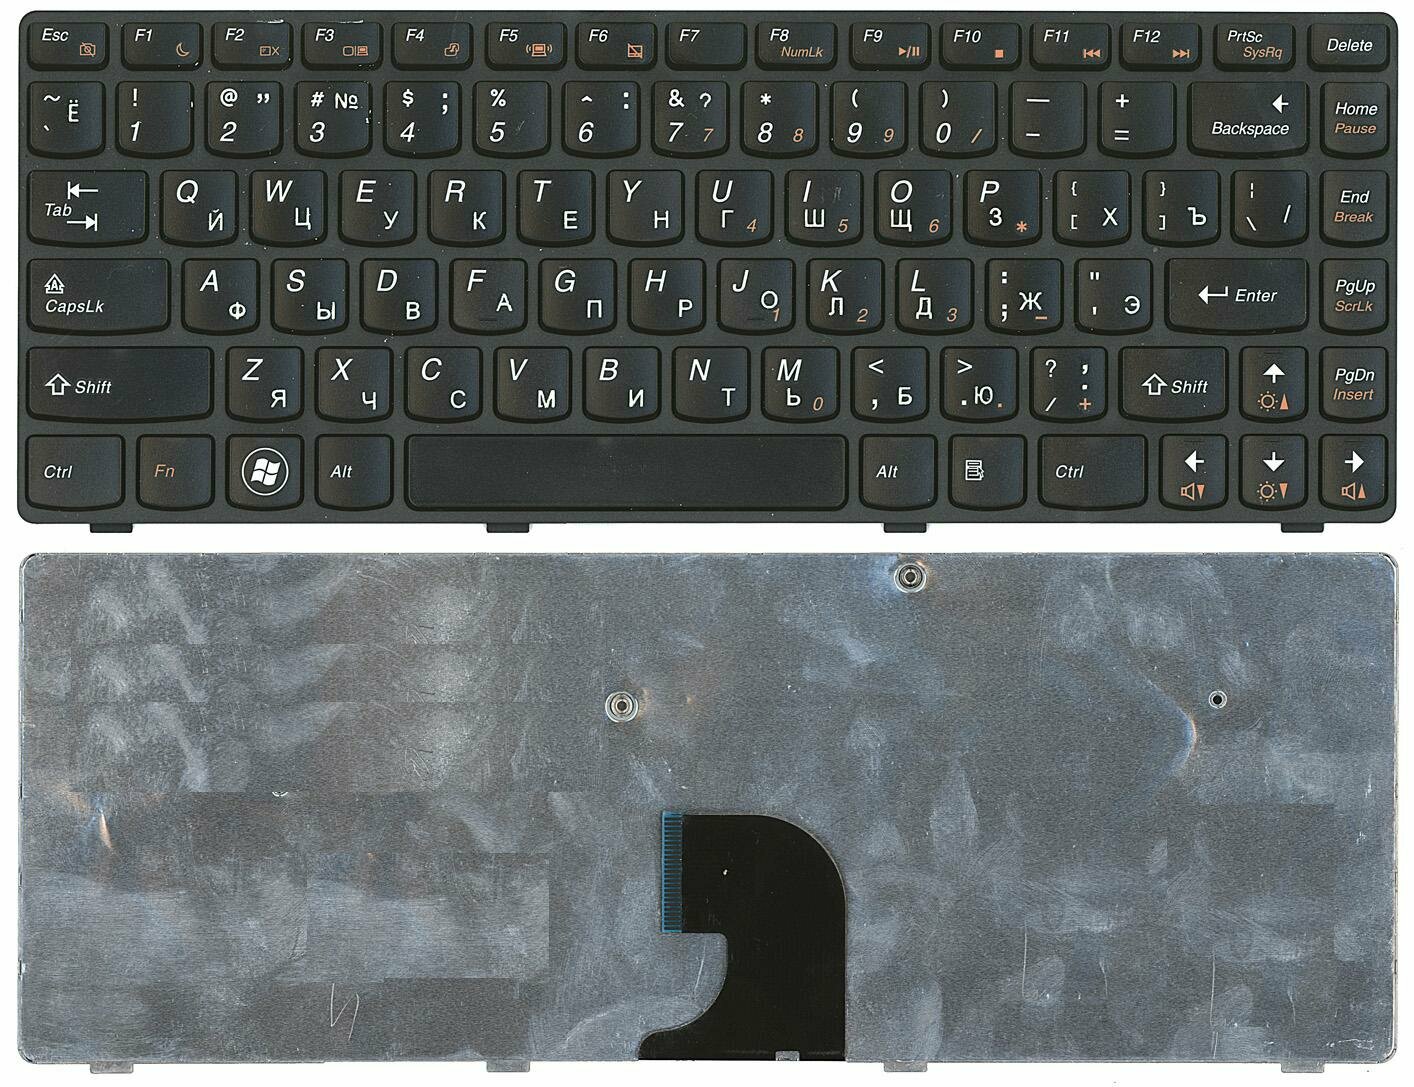 Клавиатура для ноутбука Lenovo IdeaPad G360 черная с рамкой